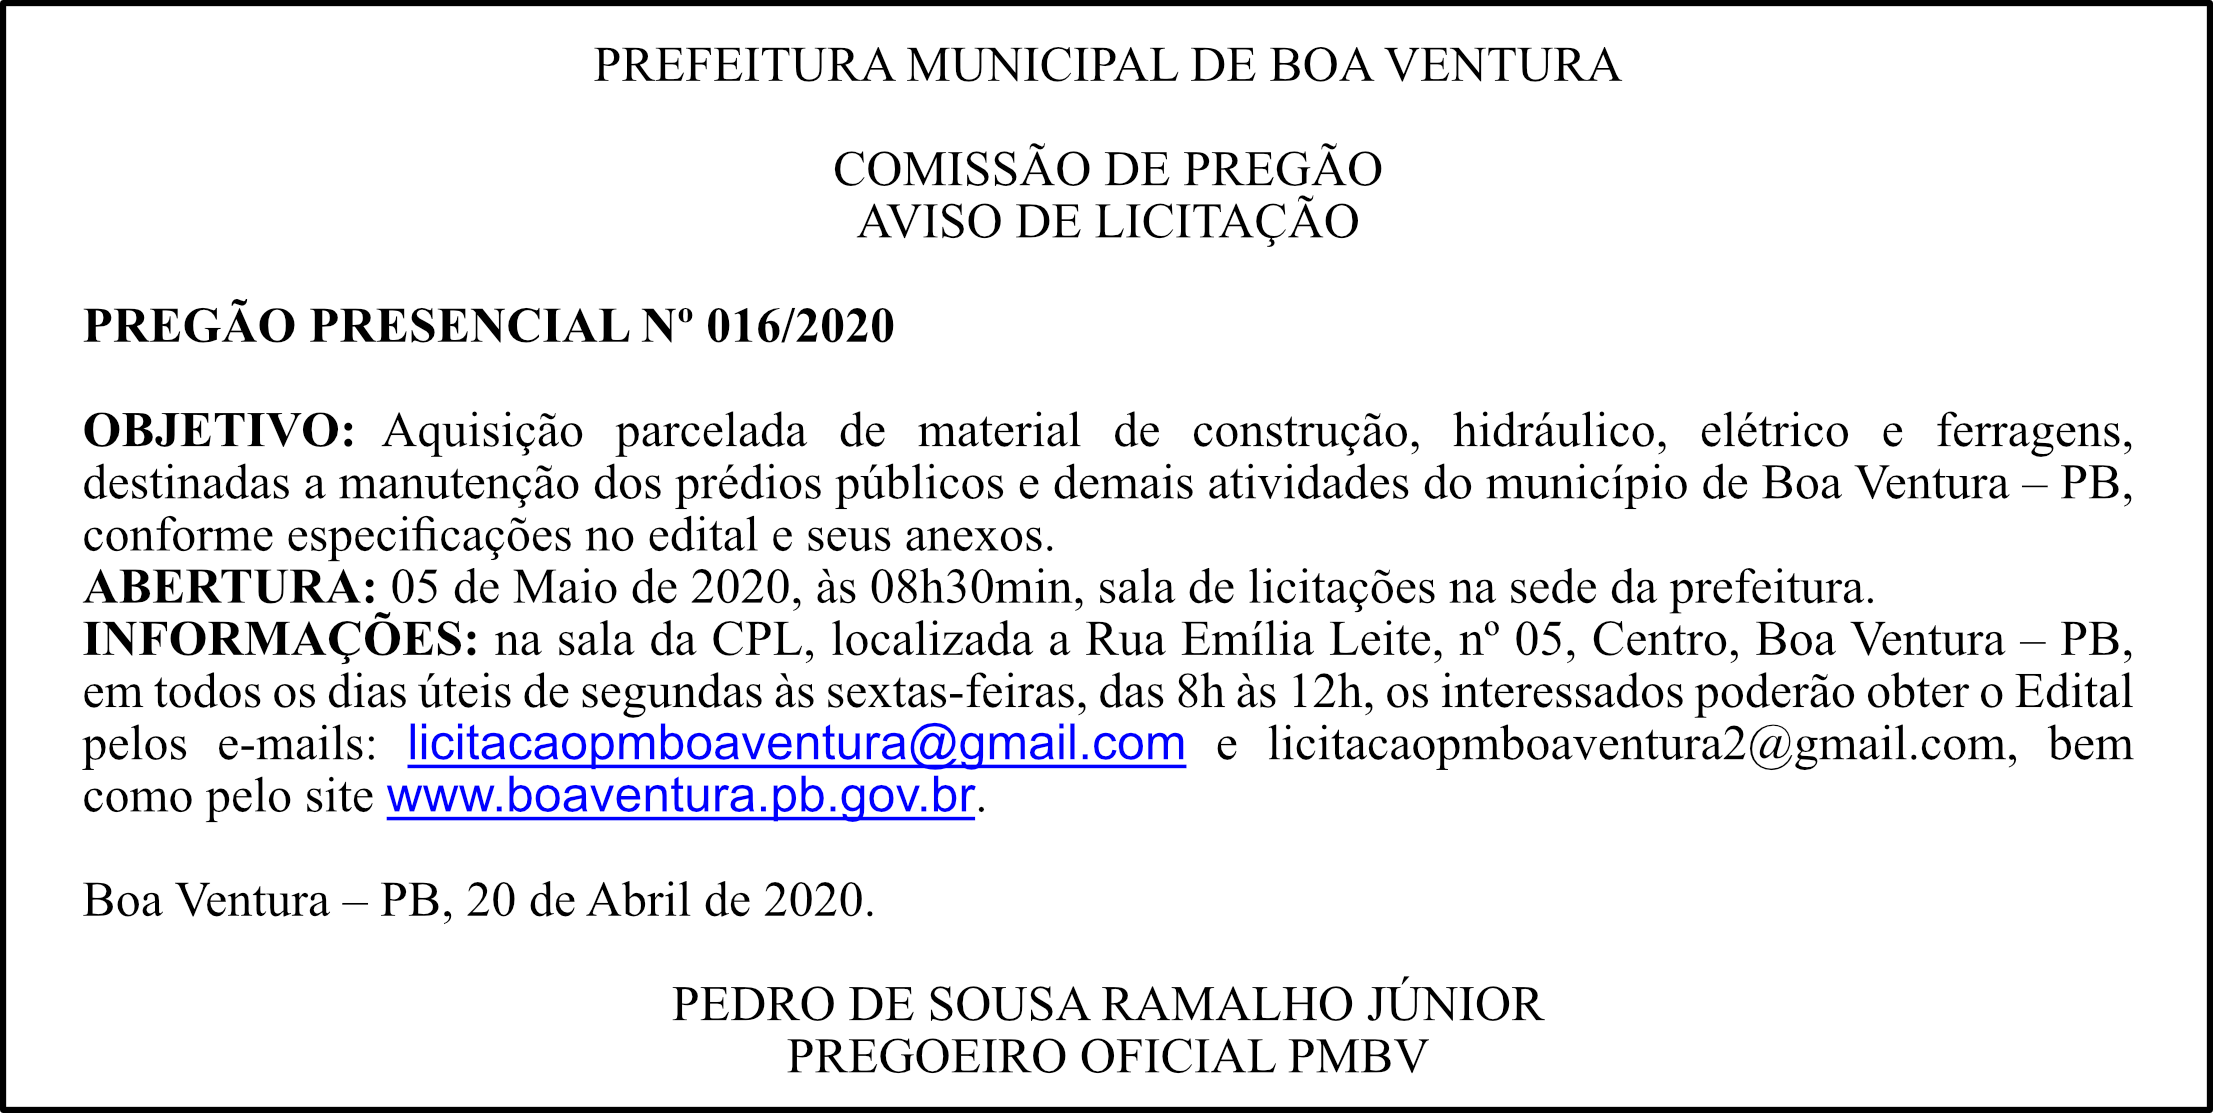 PREFEITURA MUNICIPAL DE BOA VENTURA – AVISO DE LICITAÇÃO – PREGÃO PRESENCIAL Nº 016/2020